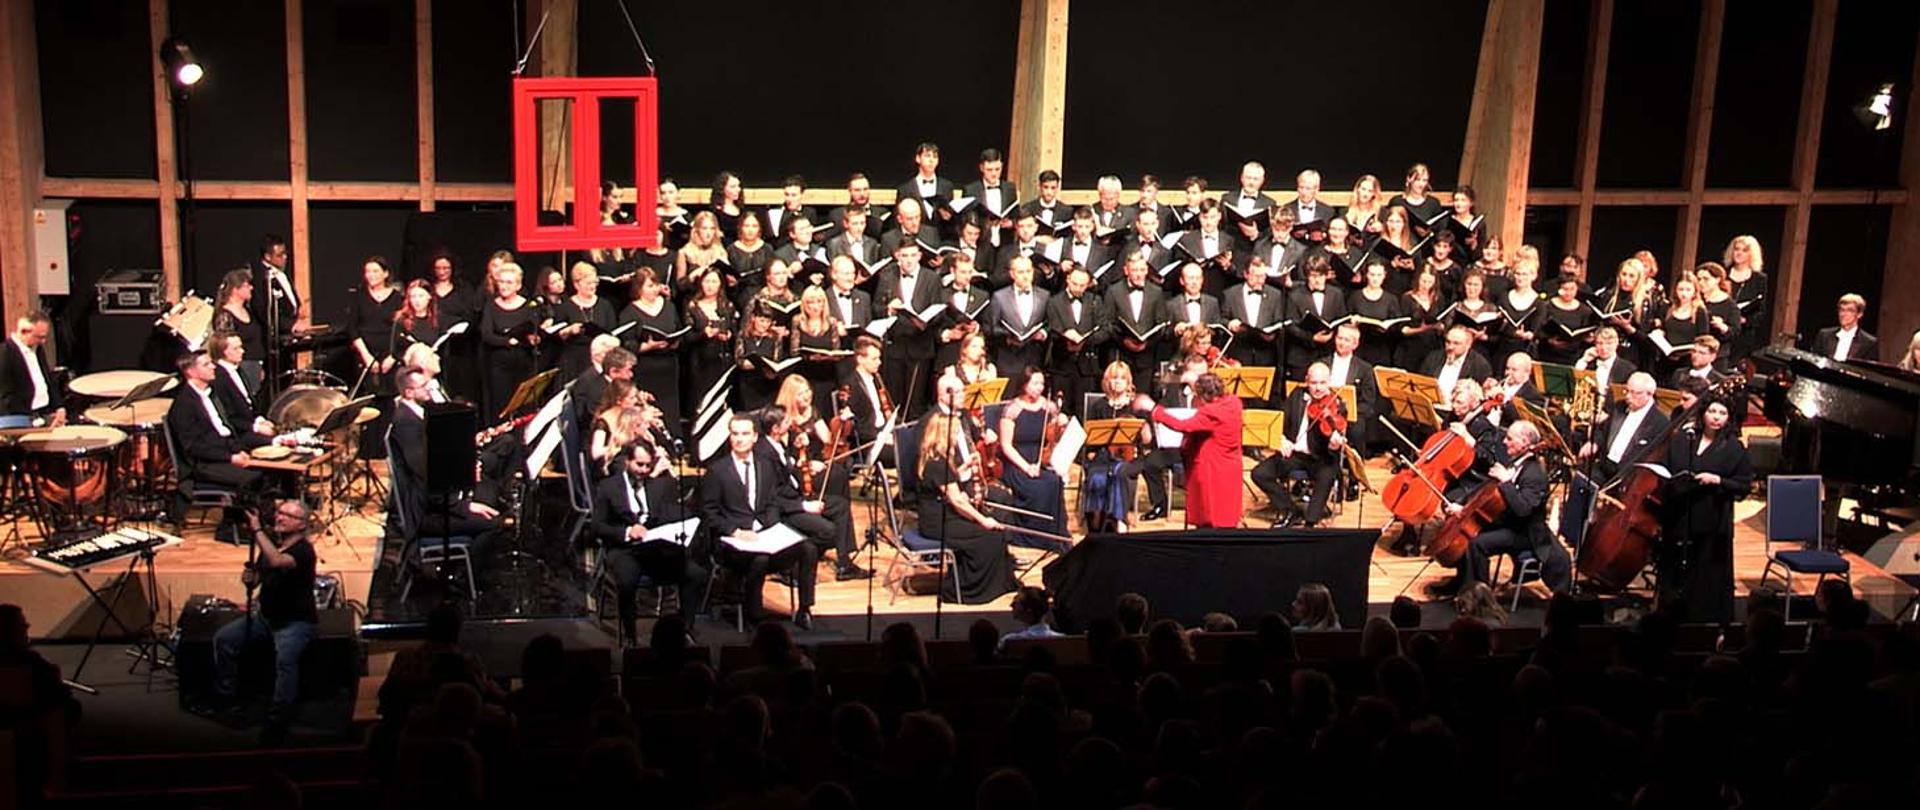 Zdjęcie sceny na której w tylnej części stoi chór składający się z kilkudziesięciu osób, z przodu i po bokach liczna orkiestra symfoniczna, przed nimi na podwyższeniu stoi dyrygentka.